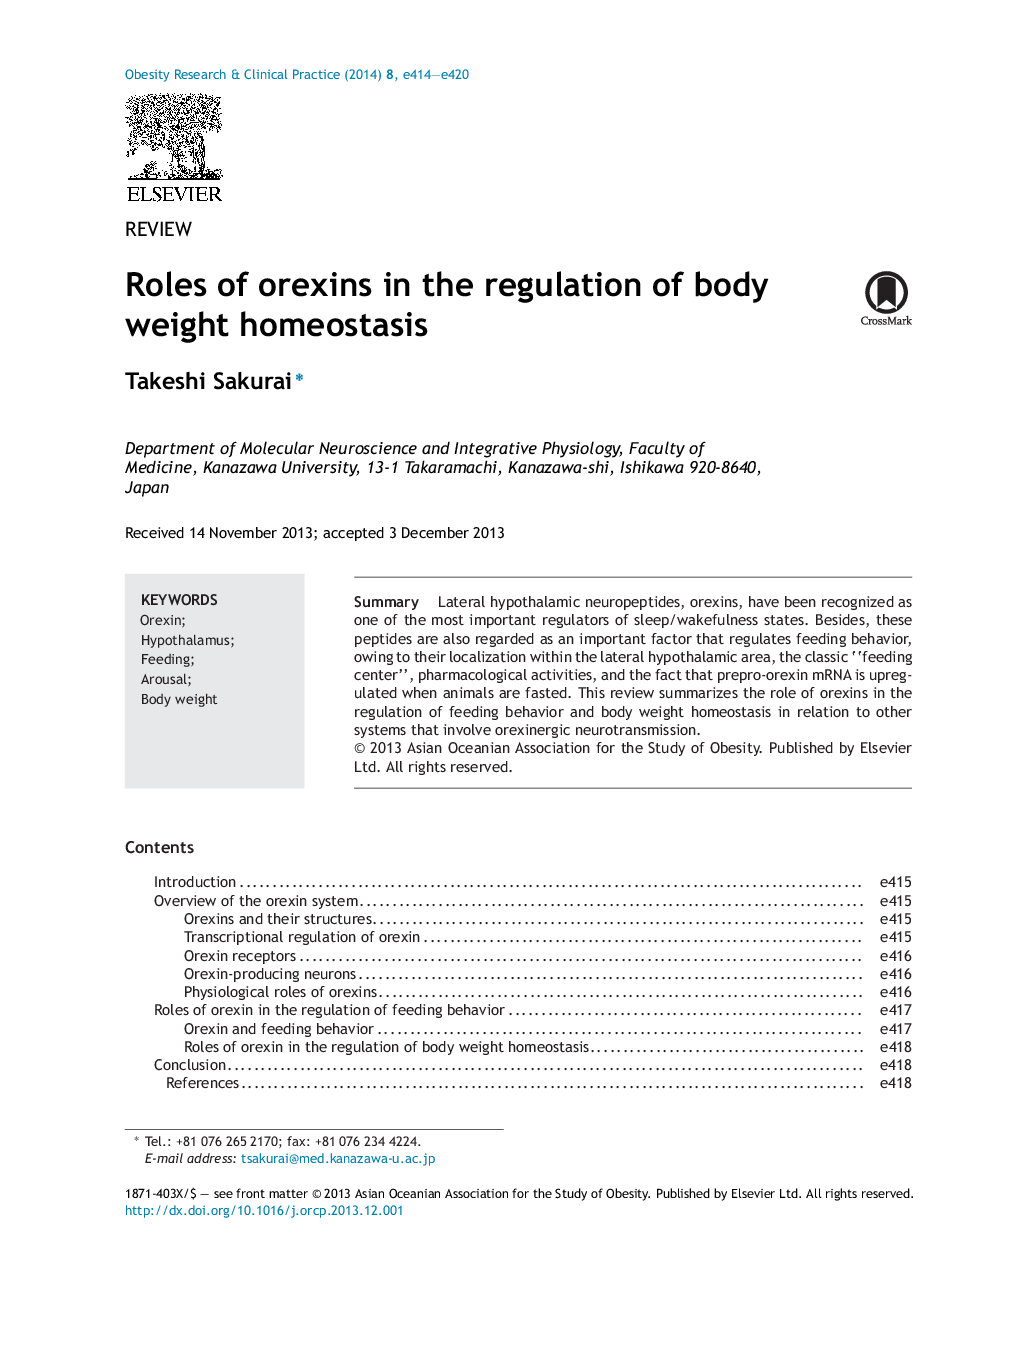 نقش اوریزین در تنظیم وزن بدن هوموستازیس 